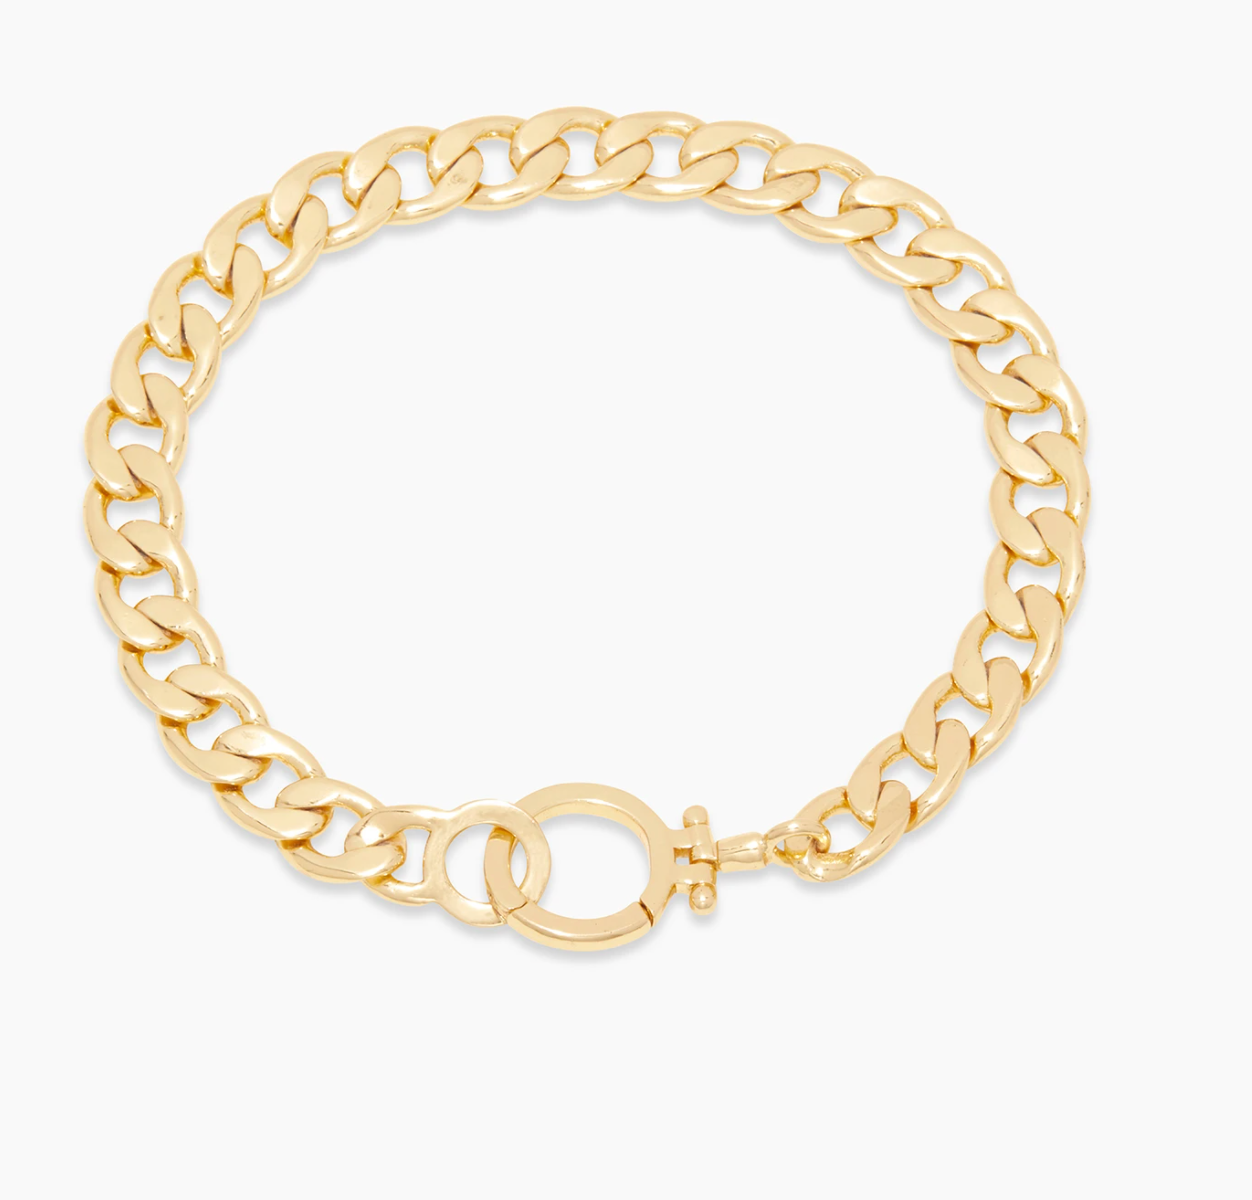 Wilder Chain Bracelet